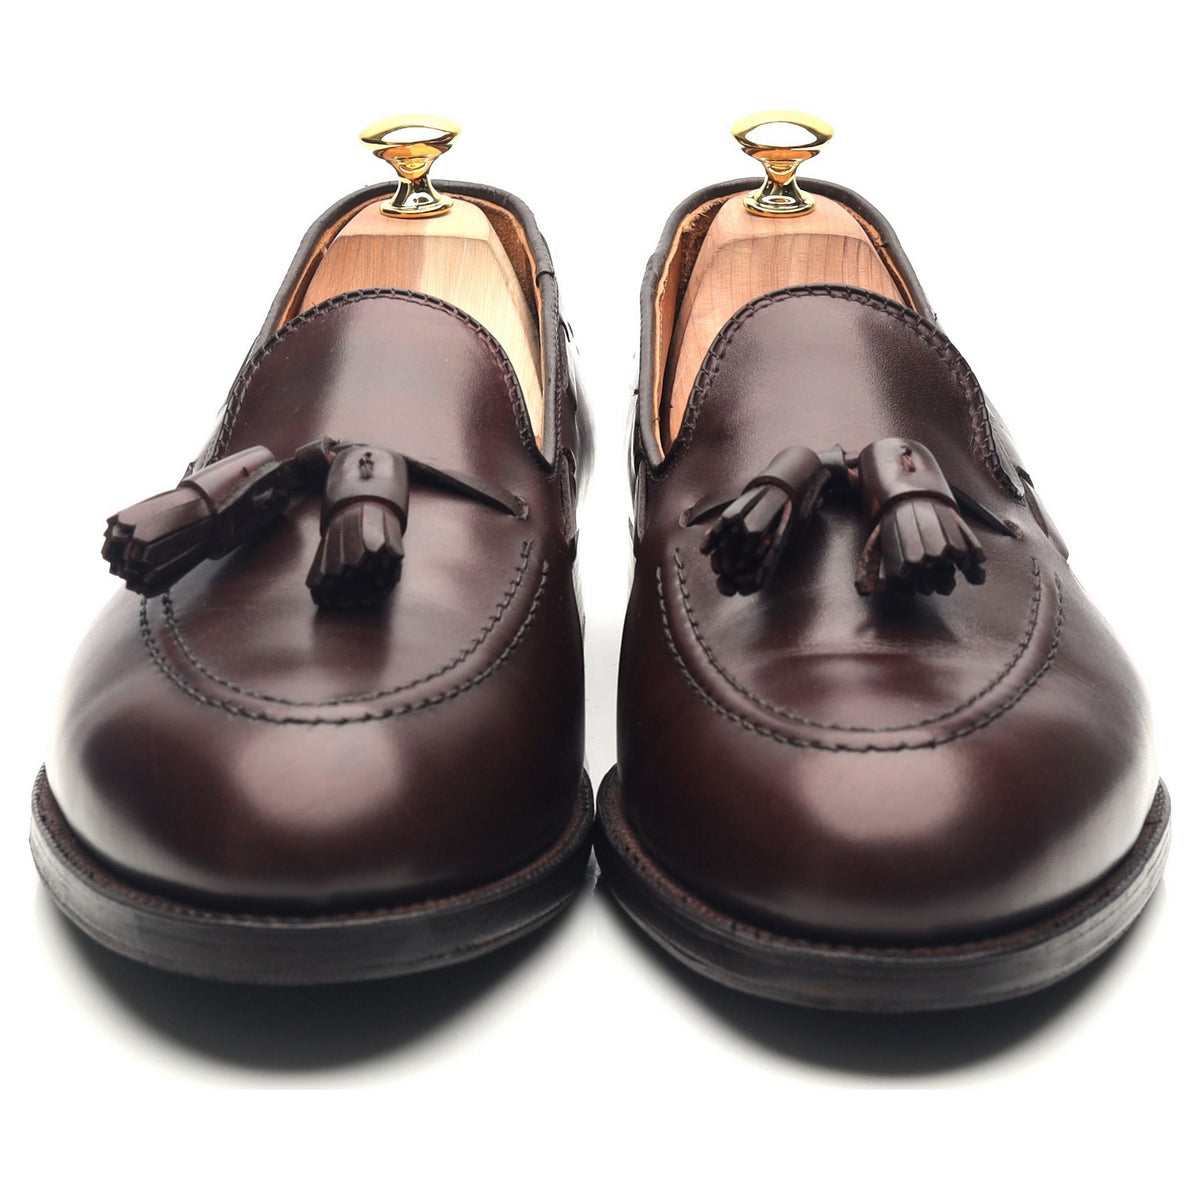 &#39;06598&#39; Burgundy Leather Tassel Loafers UK 10.5 US 11